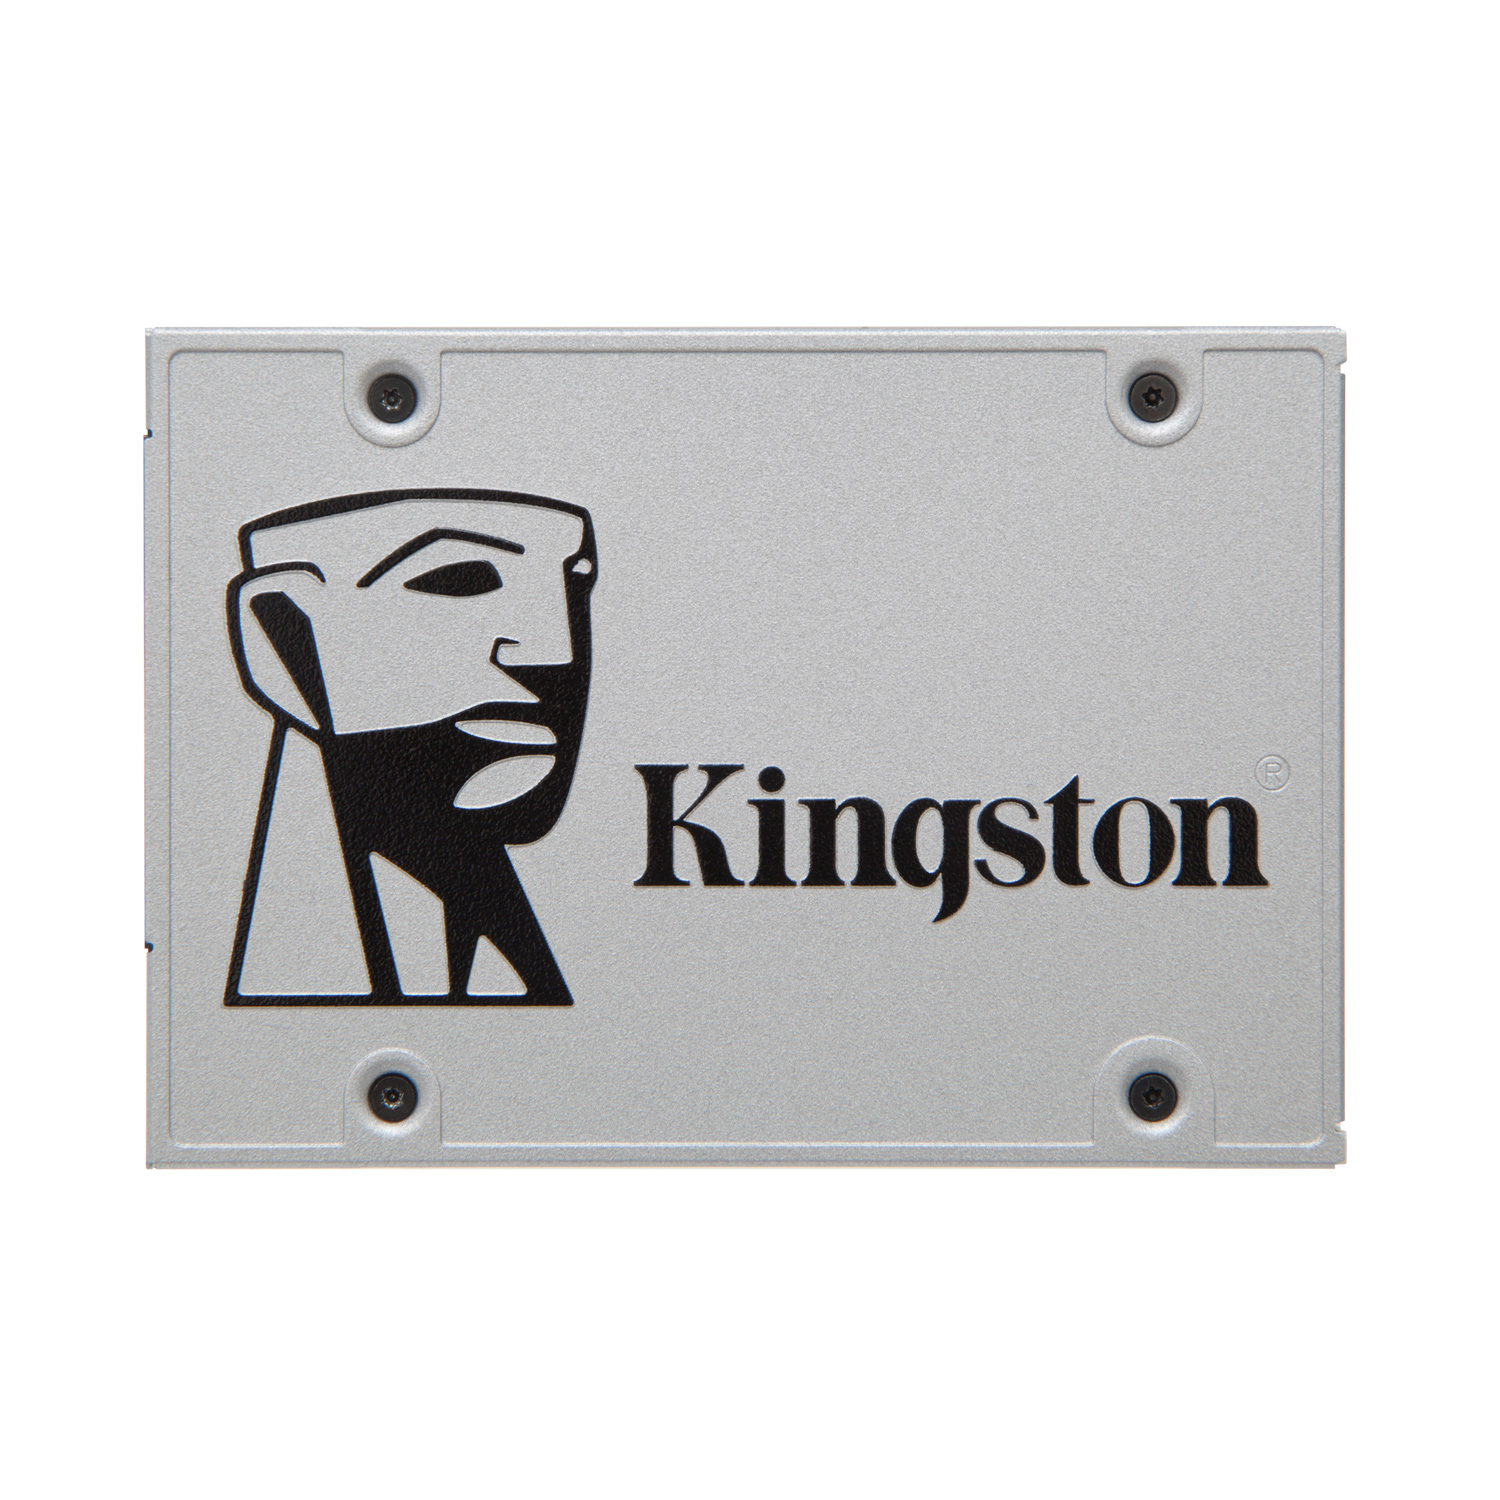 Disque dur SSD Kingston A400 240 Go 2.5 pouces 7mm Serial ATA 6Gb/s, Futur Réunion informatique